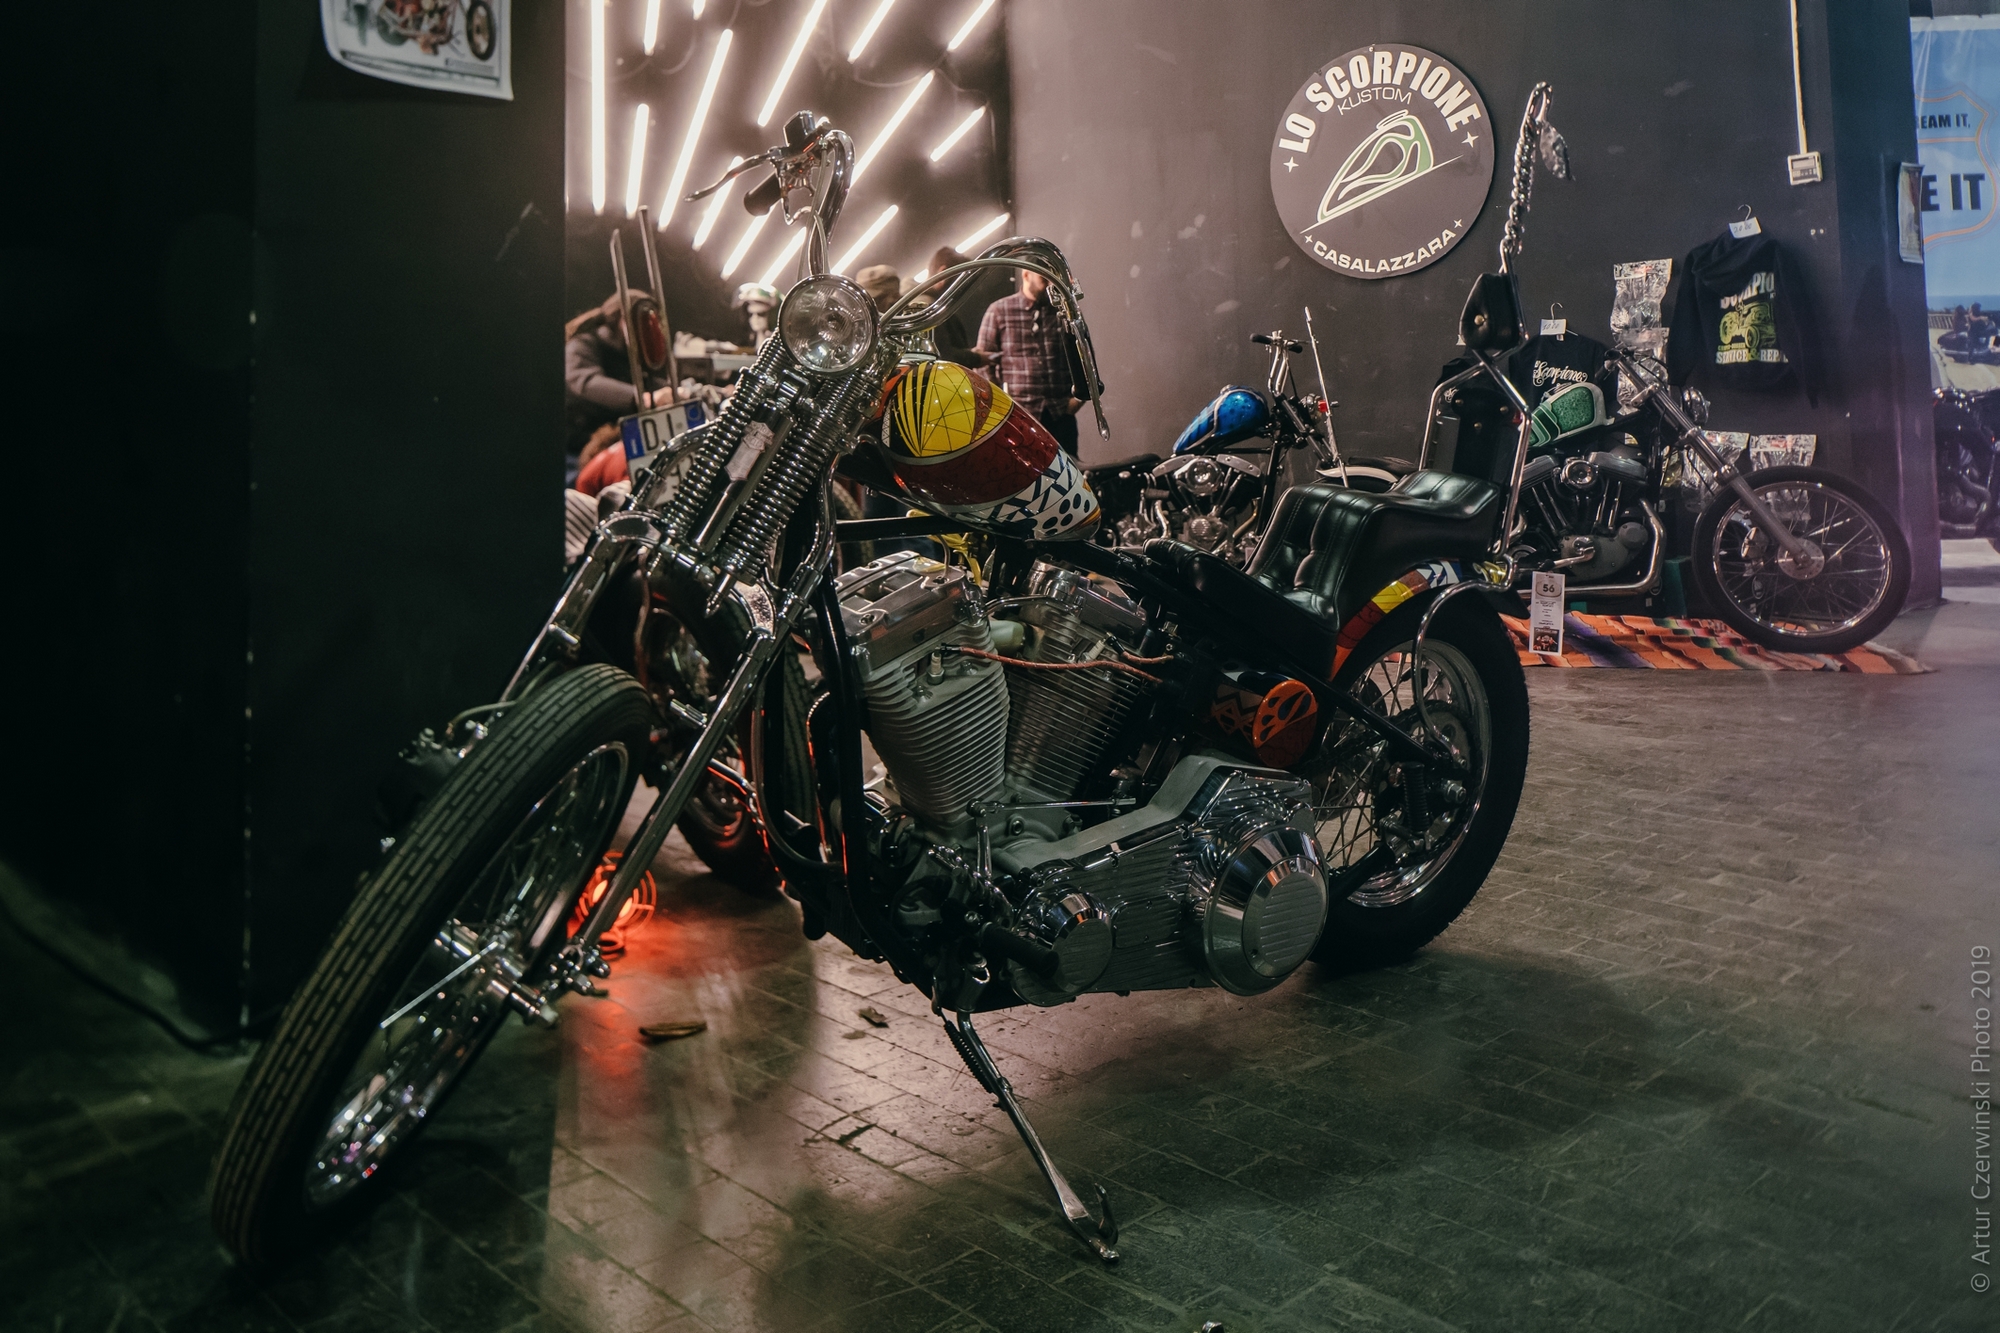 Salon personnalisé de la moto de la ville éternelle 2018